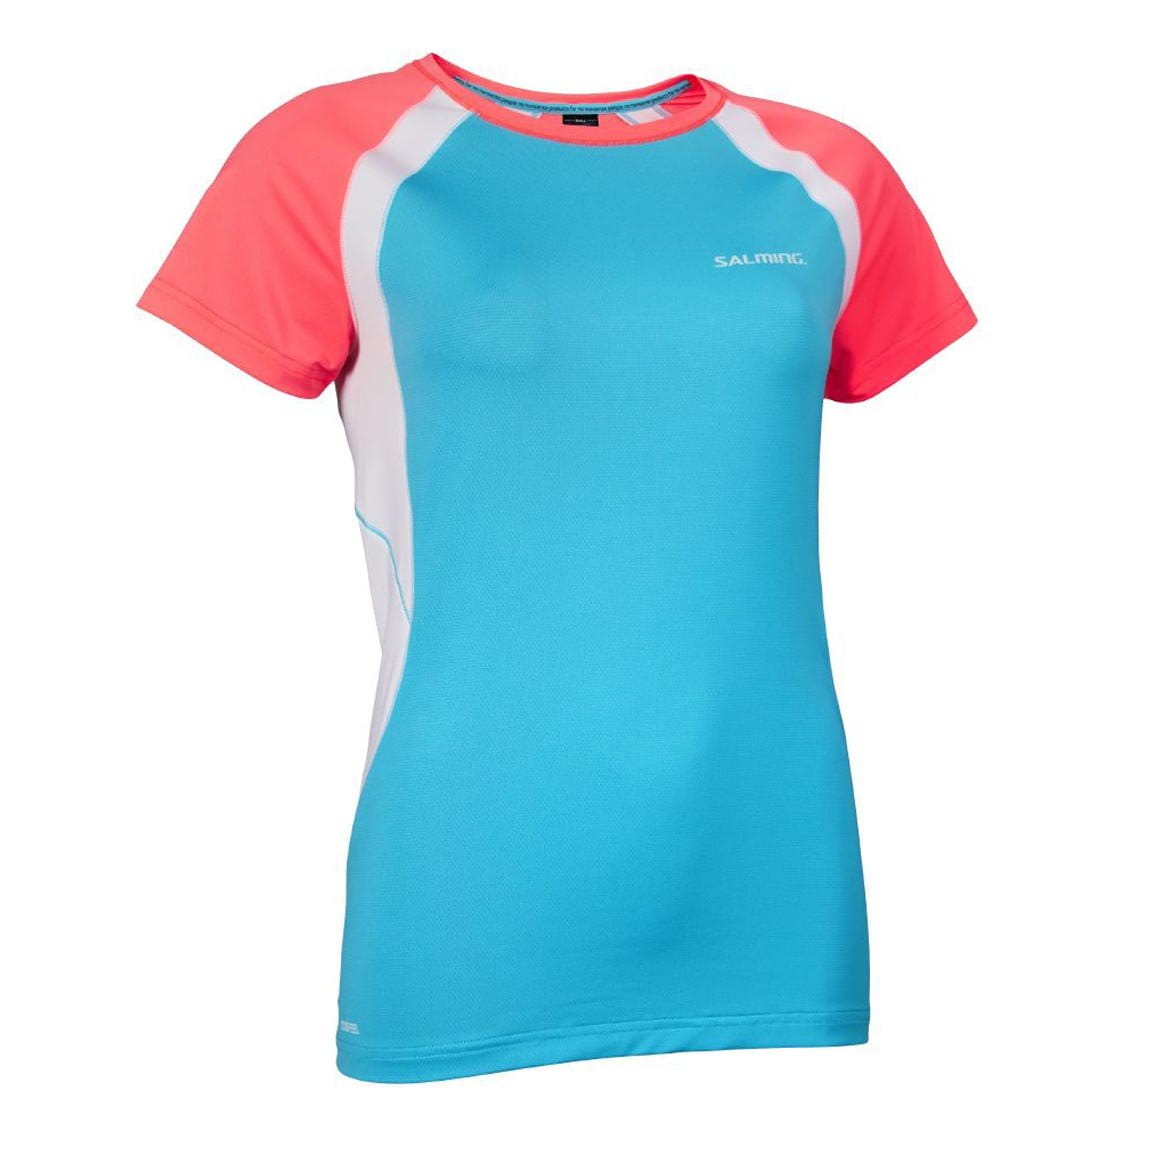 Chemise de match pour femmes Salming Nova Tee Women Coral/Light Blue